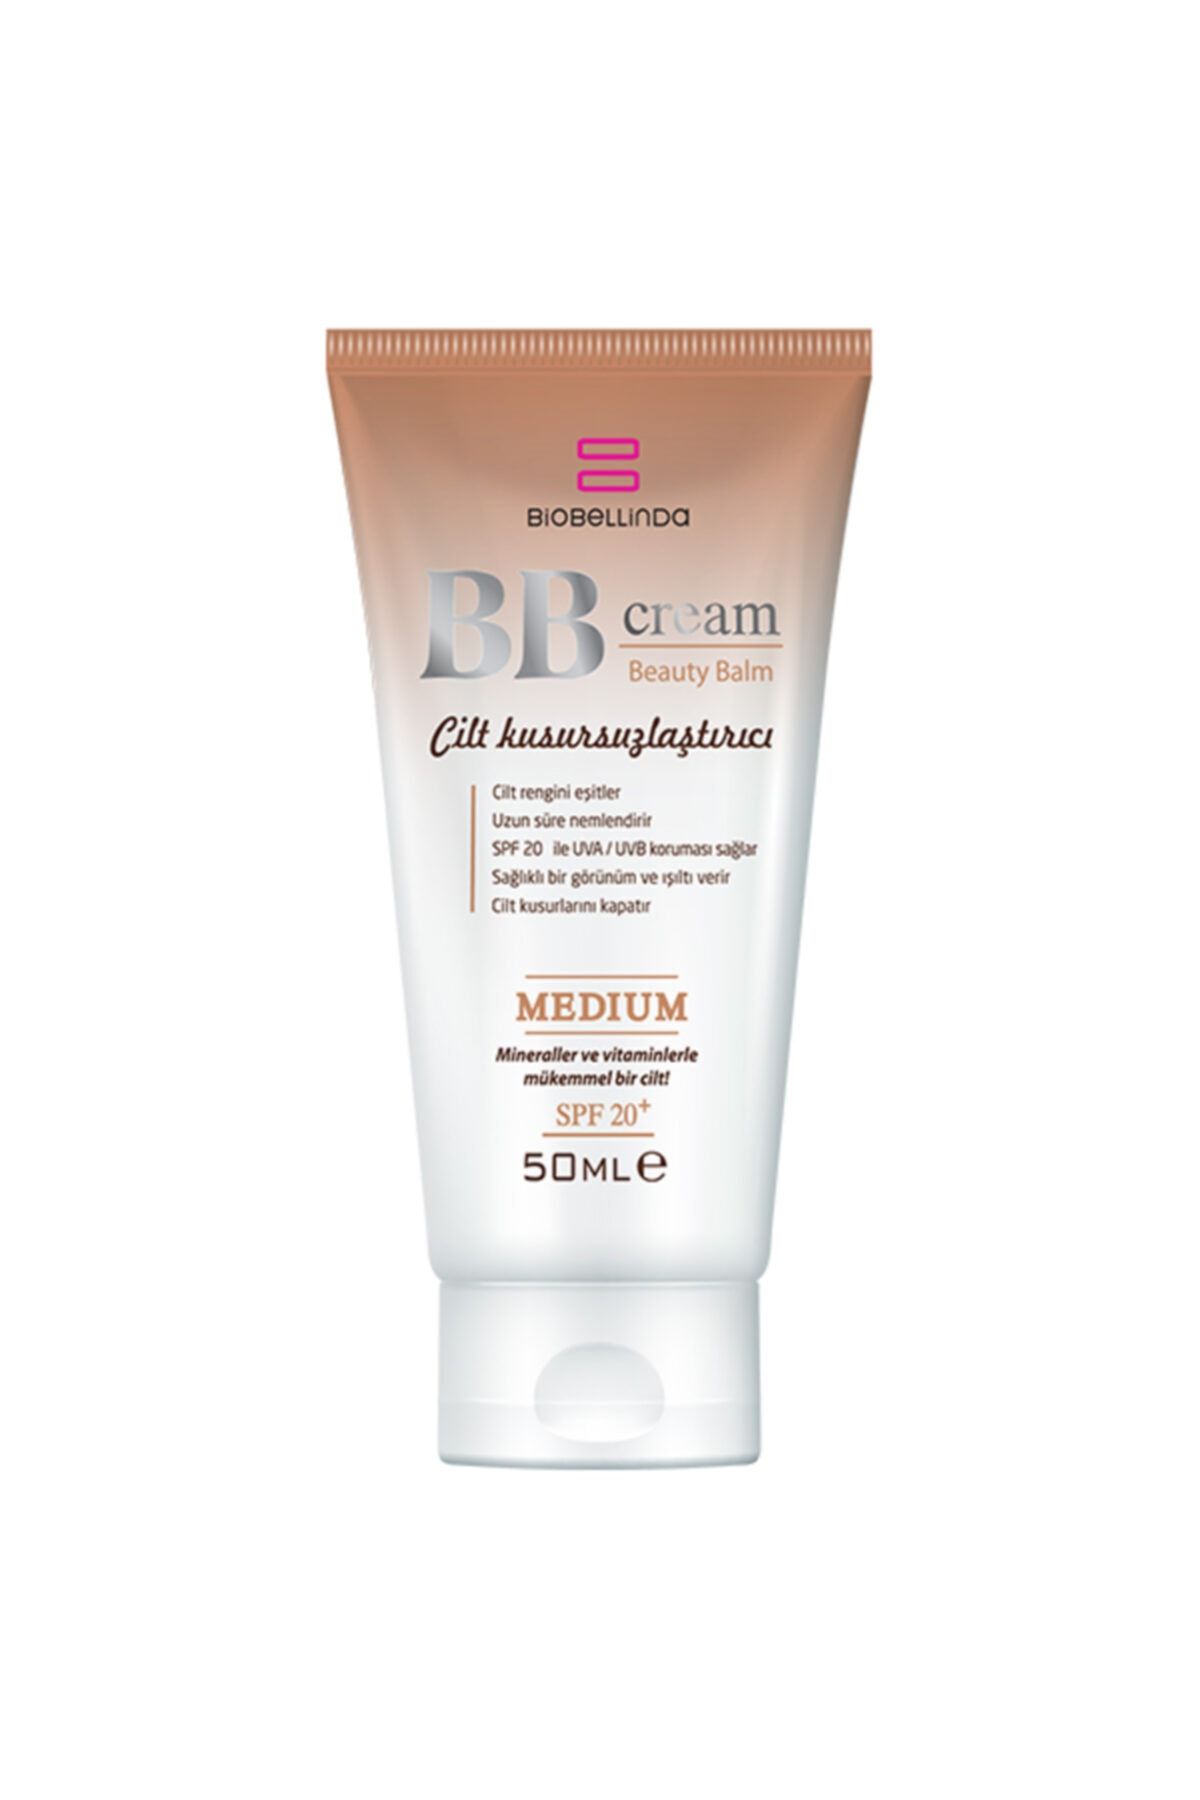 BioBellinda Bb Cream-cilt Kusursuzlaştırıcı-net Ürün-bl 106